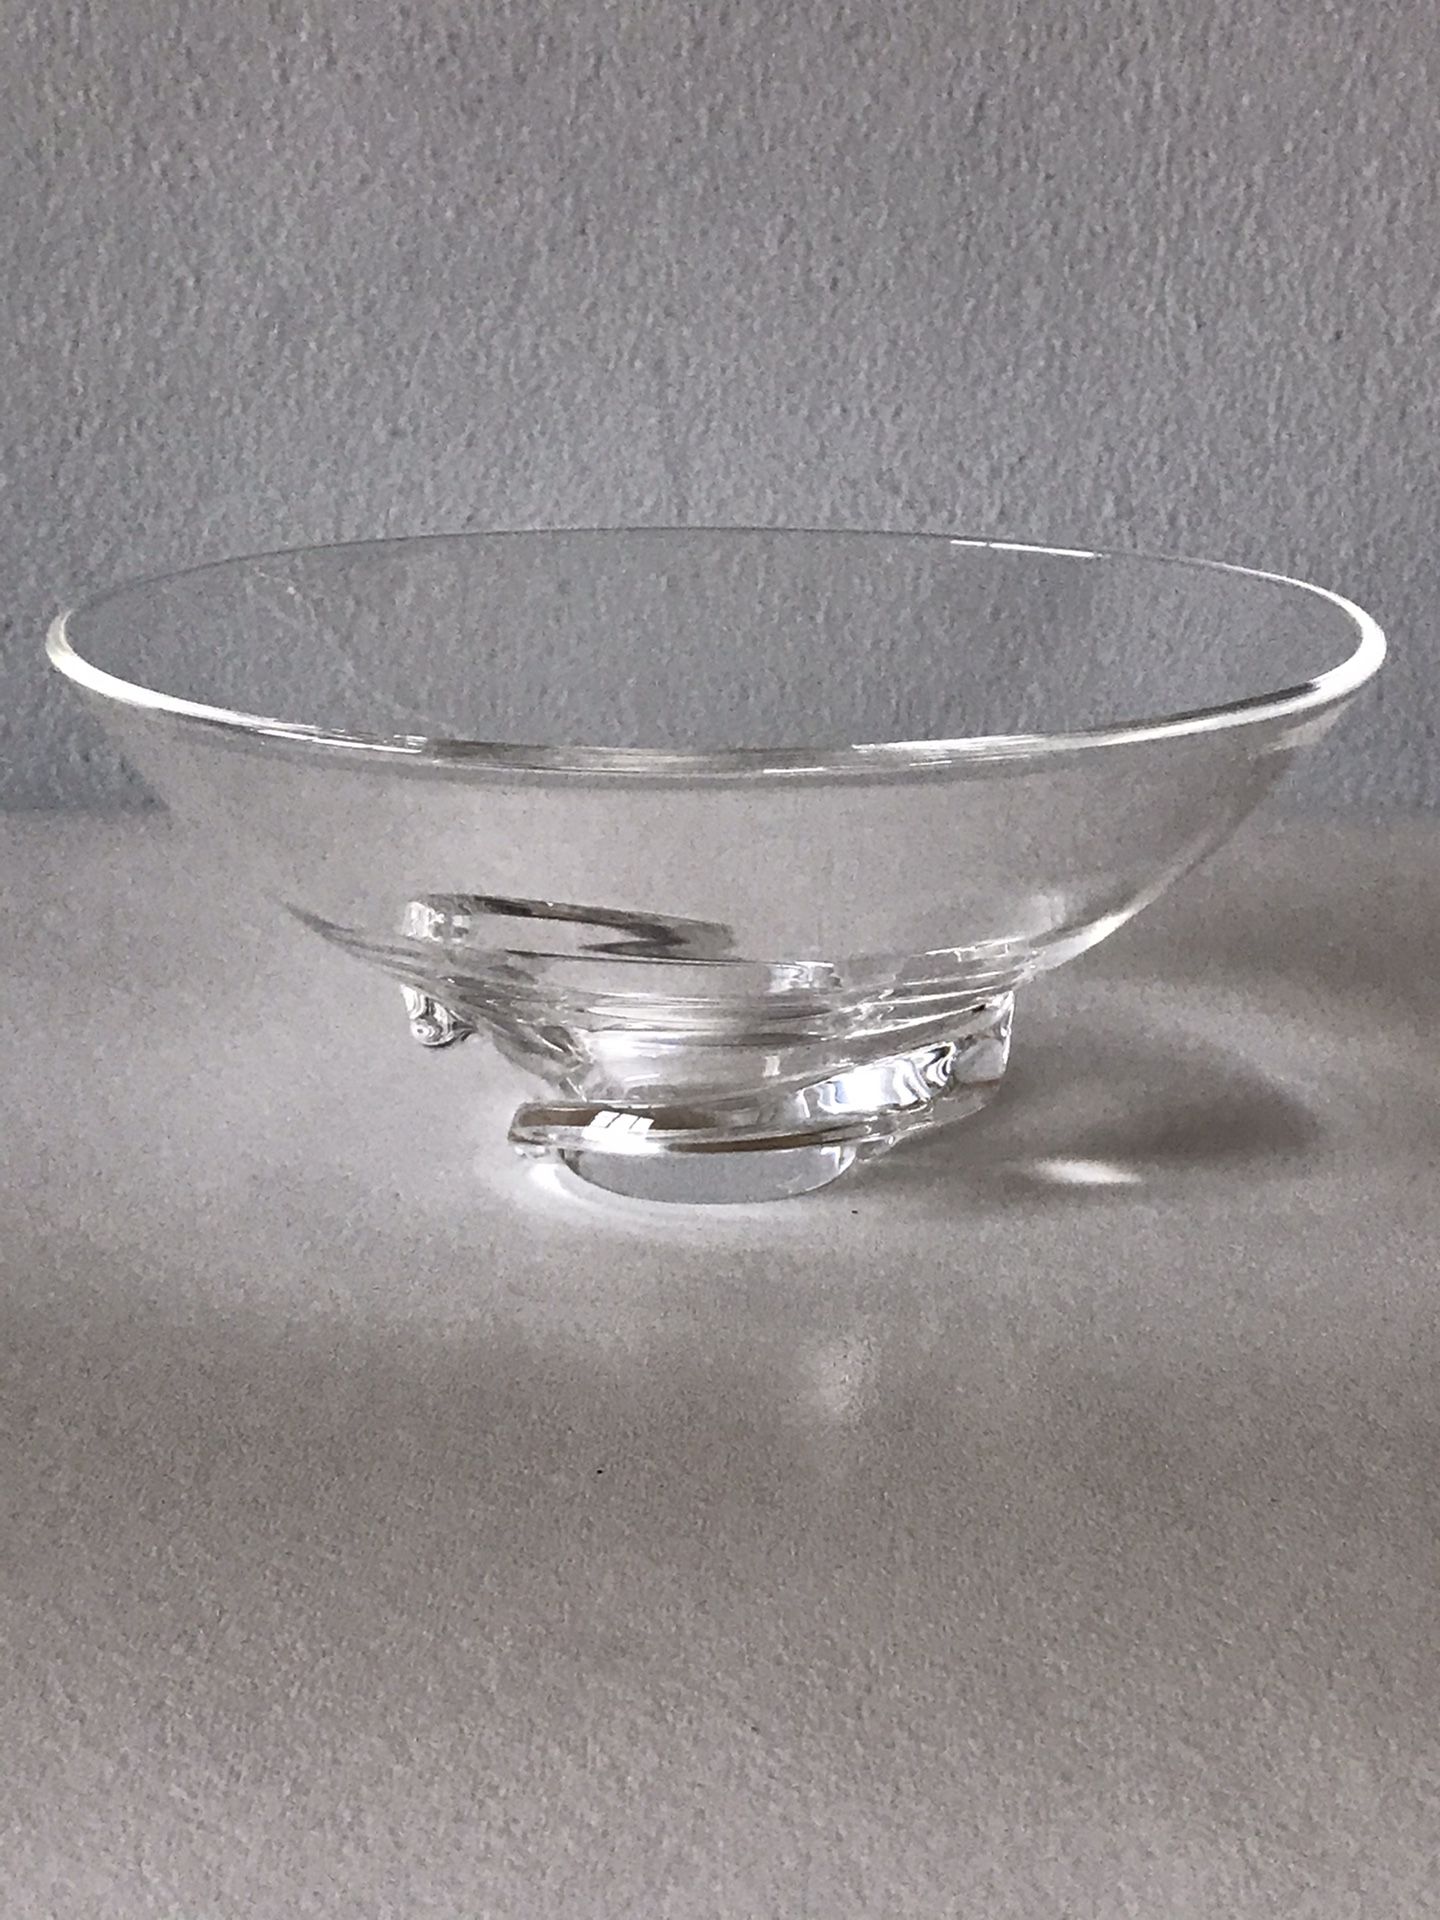 VINTAGE STUBEN ART GLASS BOWL DISH -SIGNED- ART NOUVEAU MODERN ANTIQUE